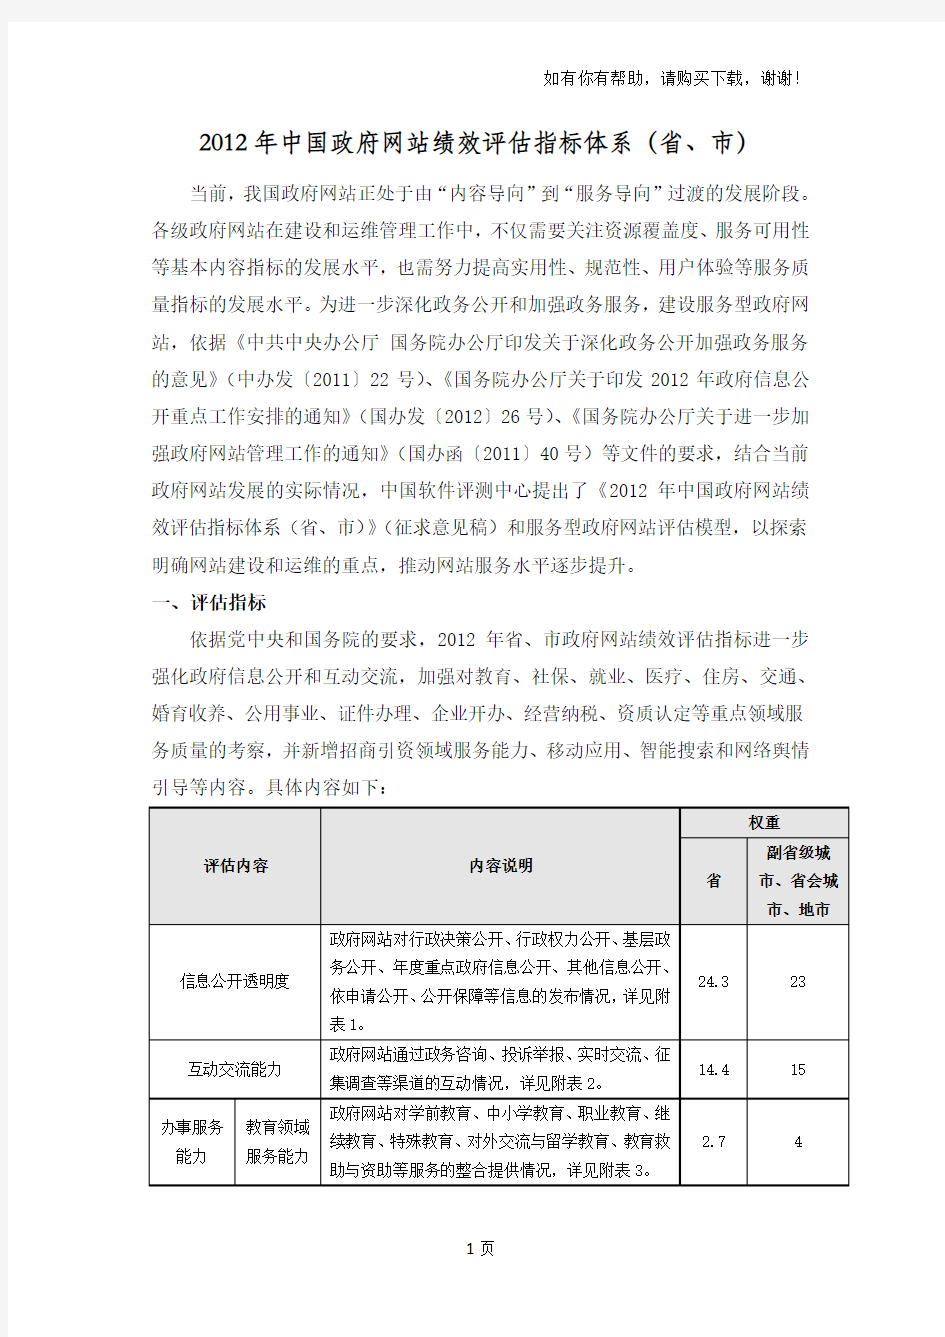 中国政府网站绩效评估指标体系省市